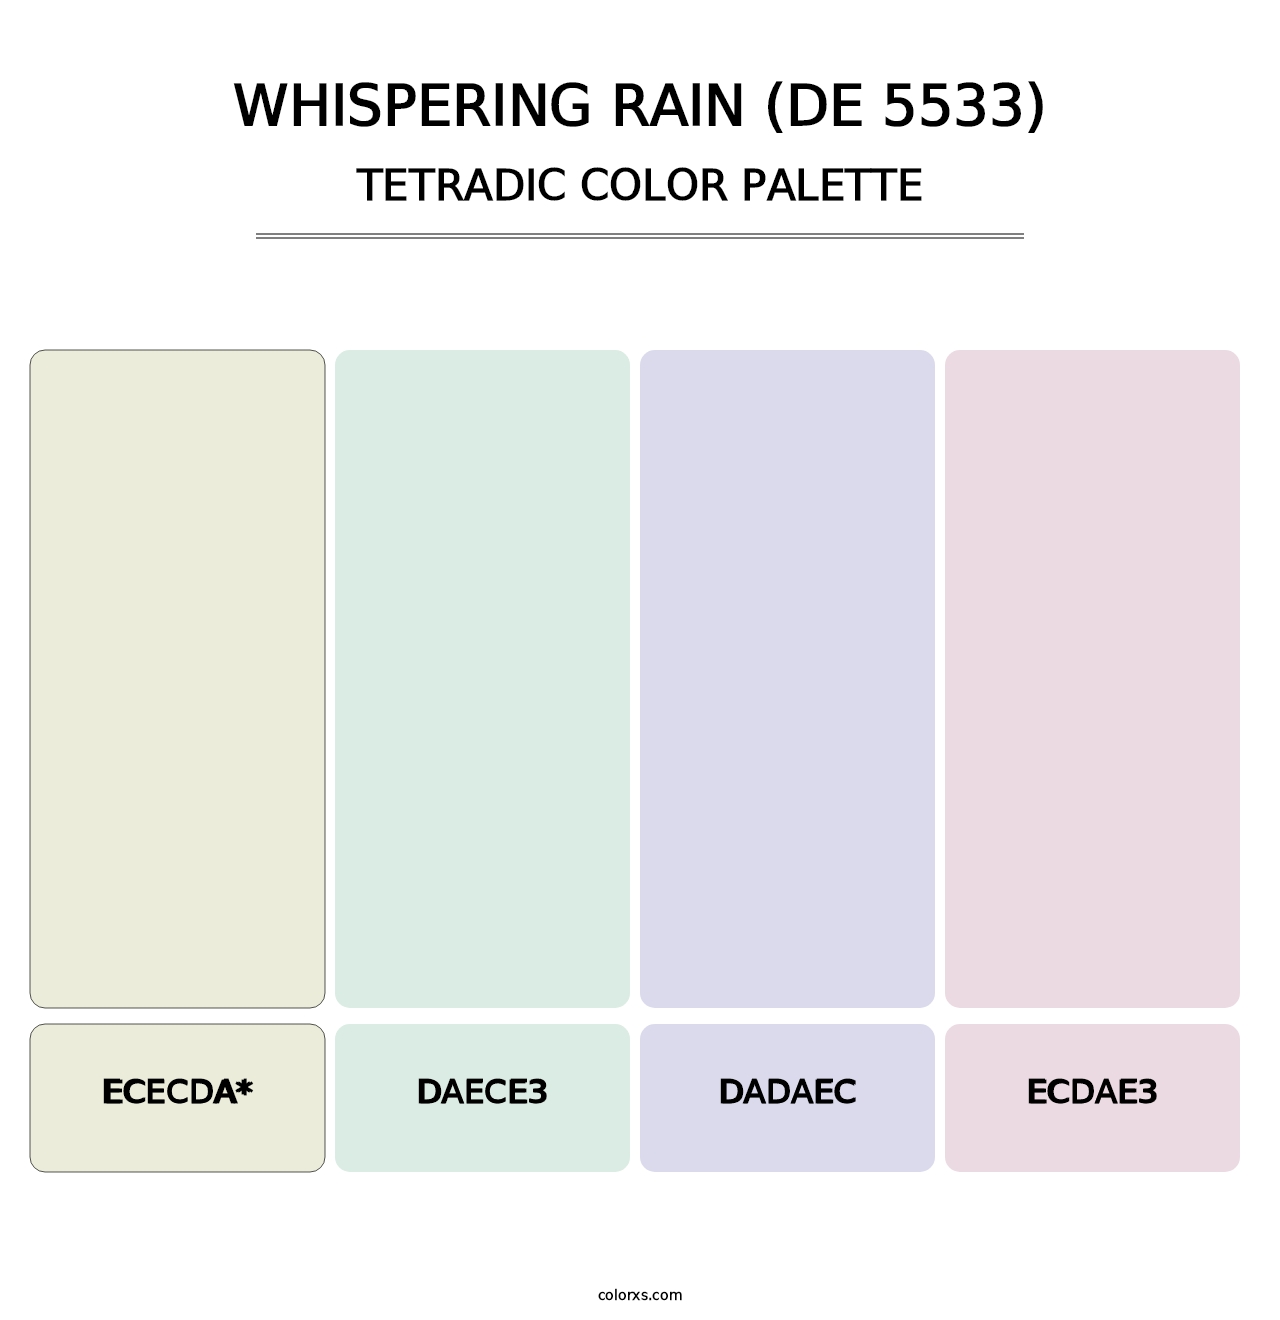 Whispering Rain (DE 5533) - Tetradic Color Palette